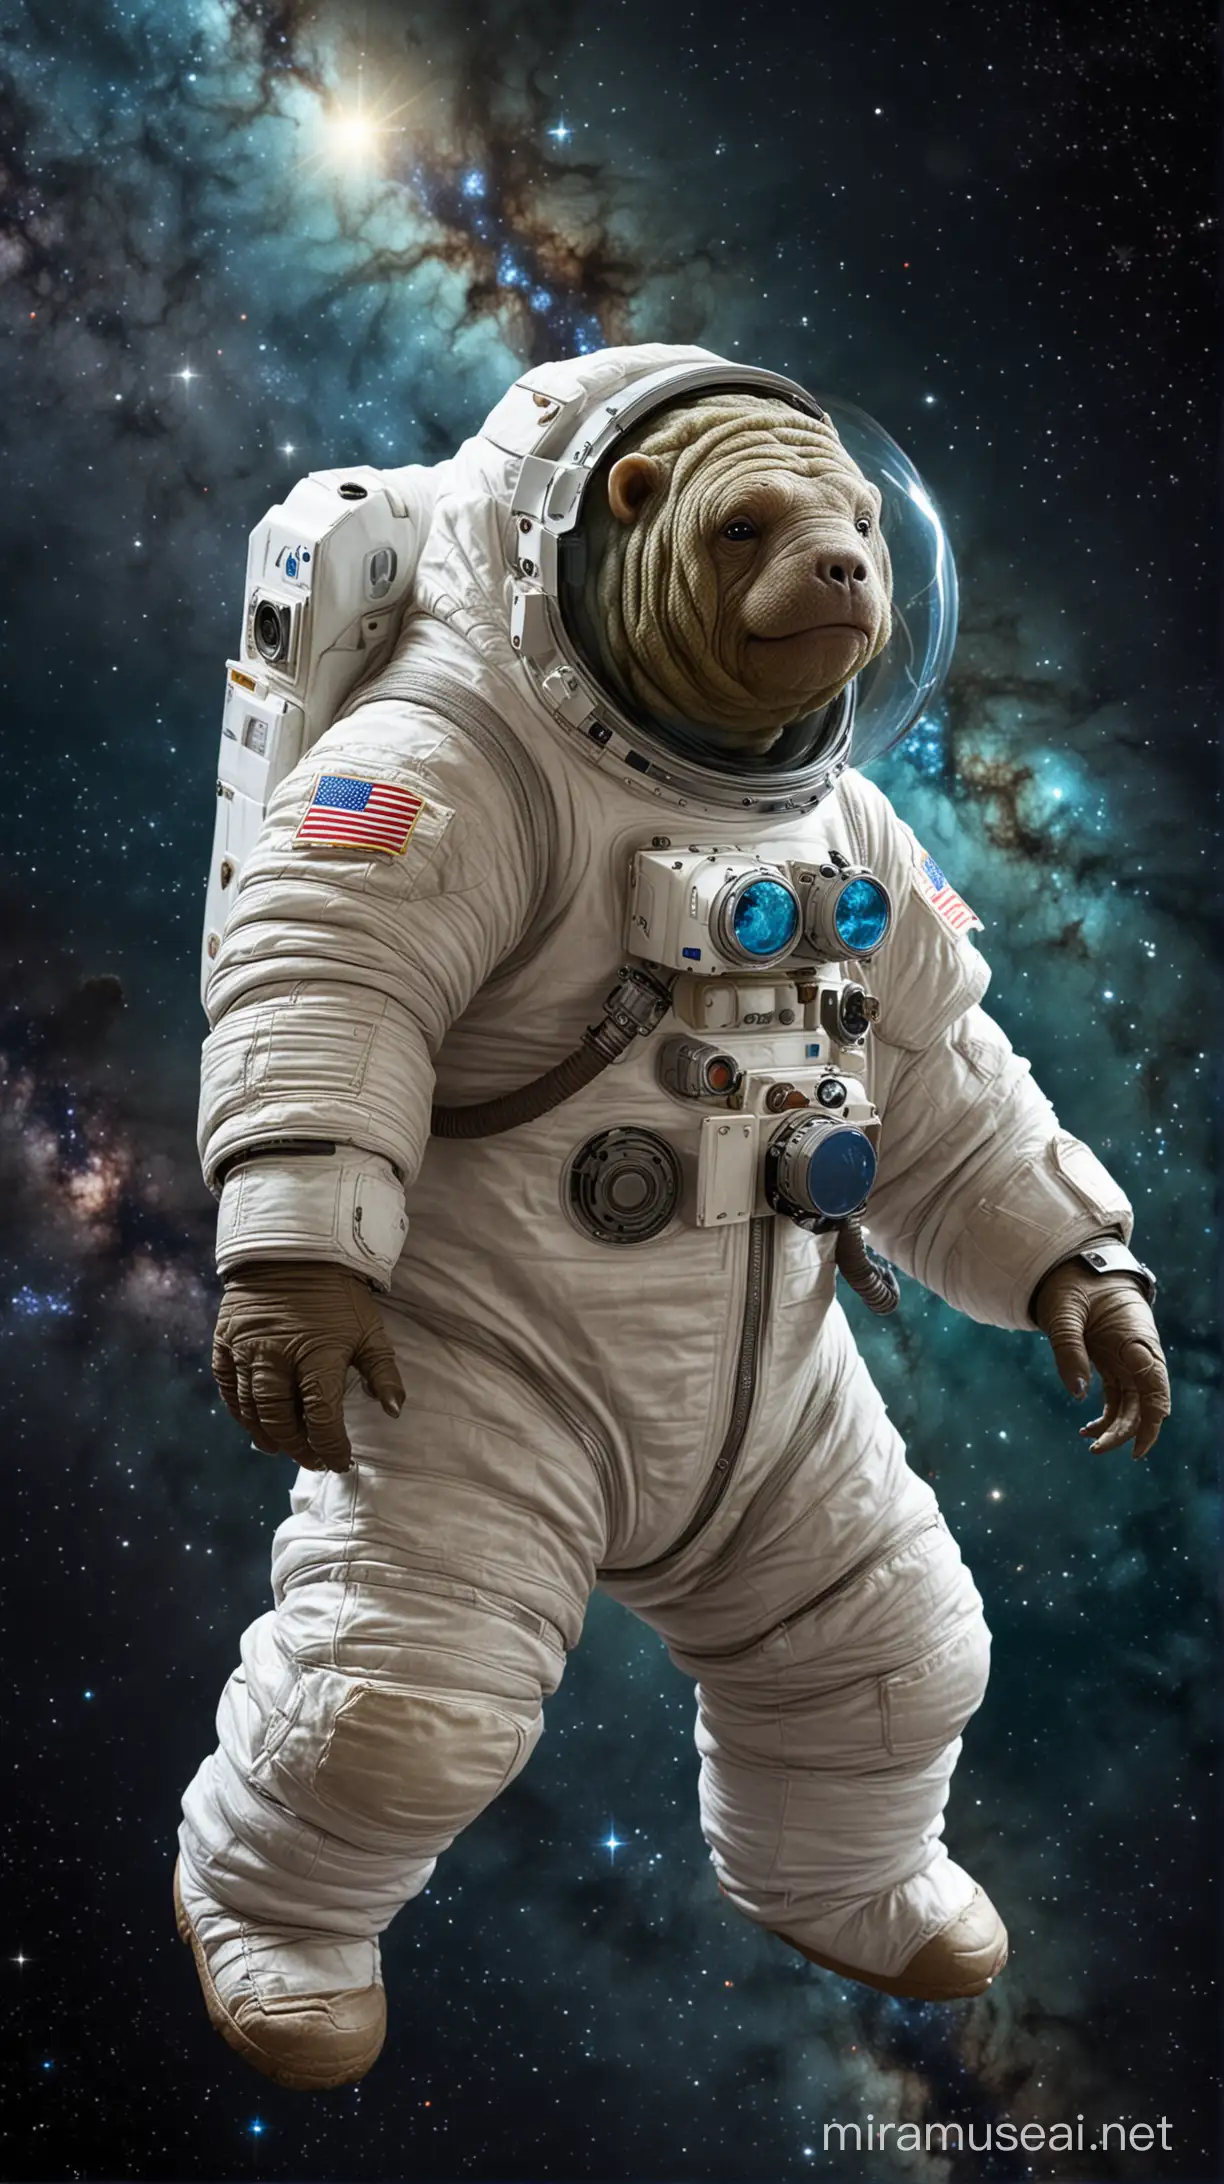 tardigrade mollusk in a spacesuit in space